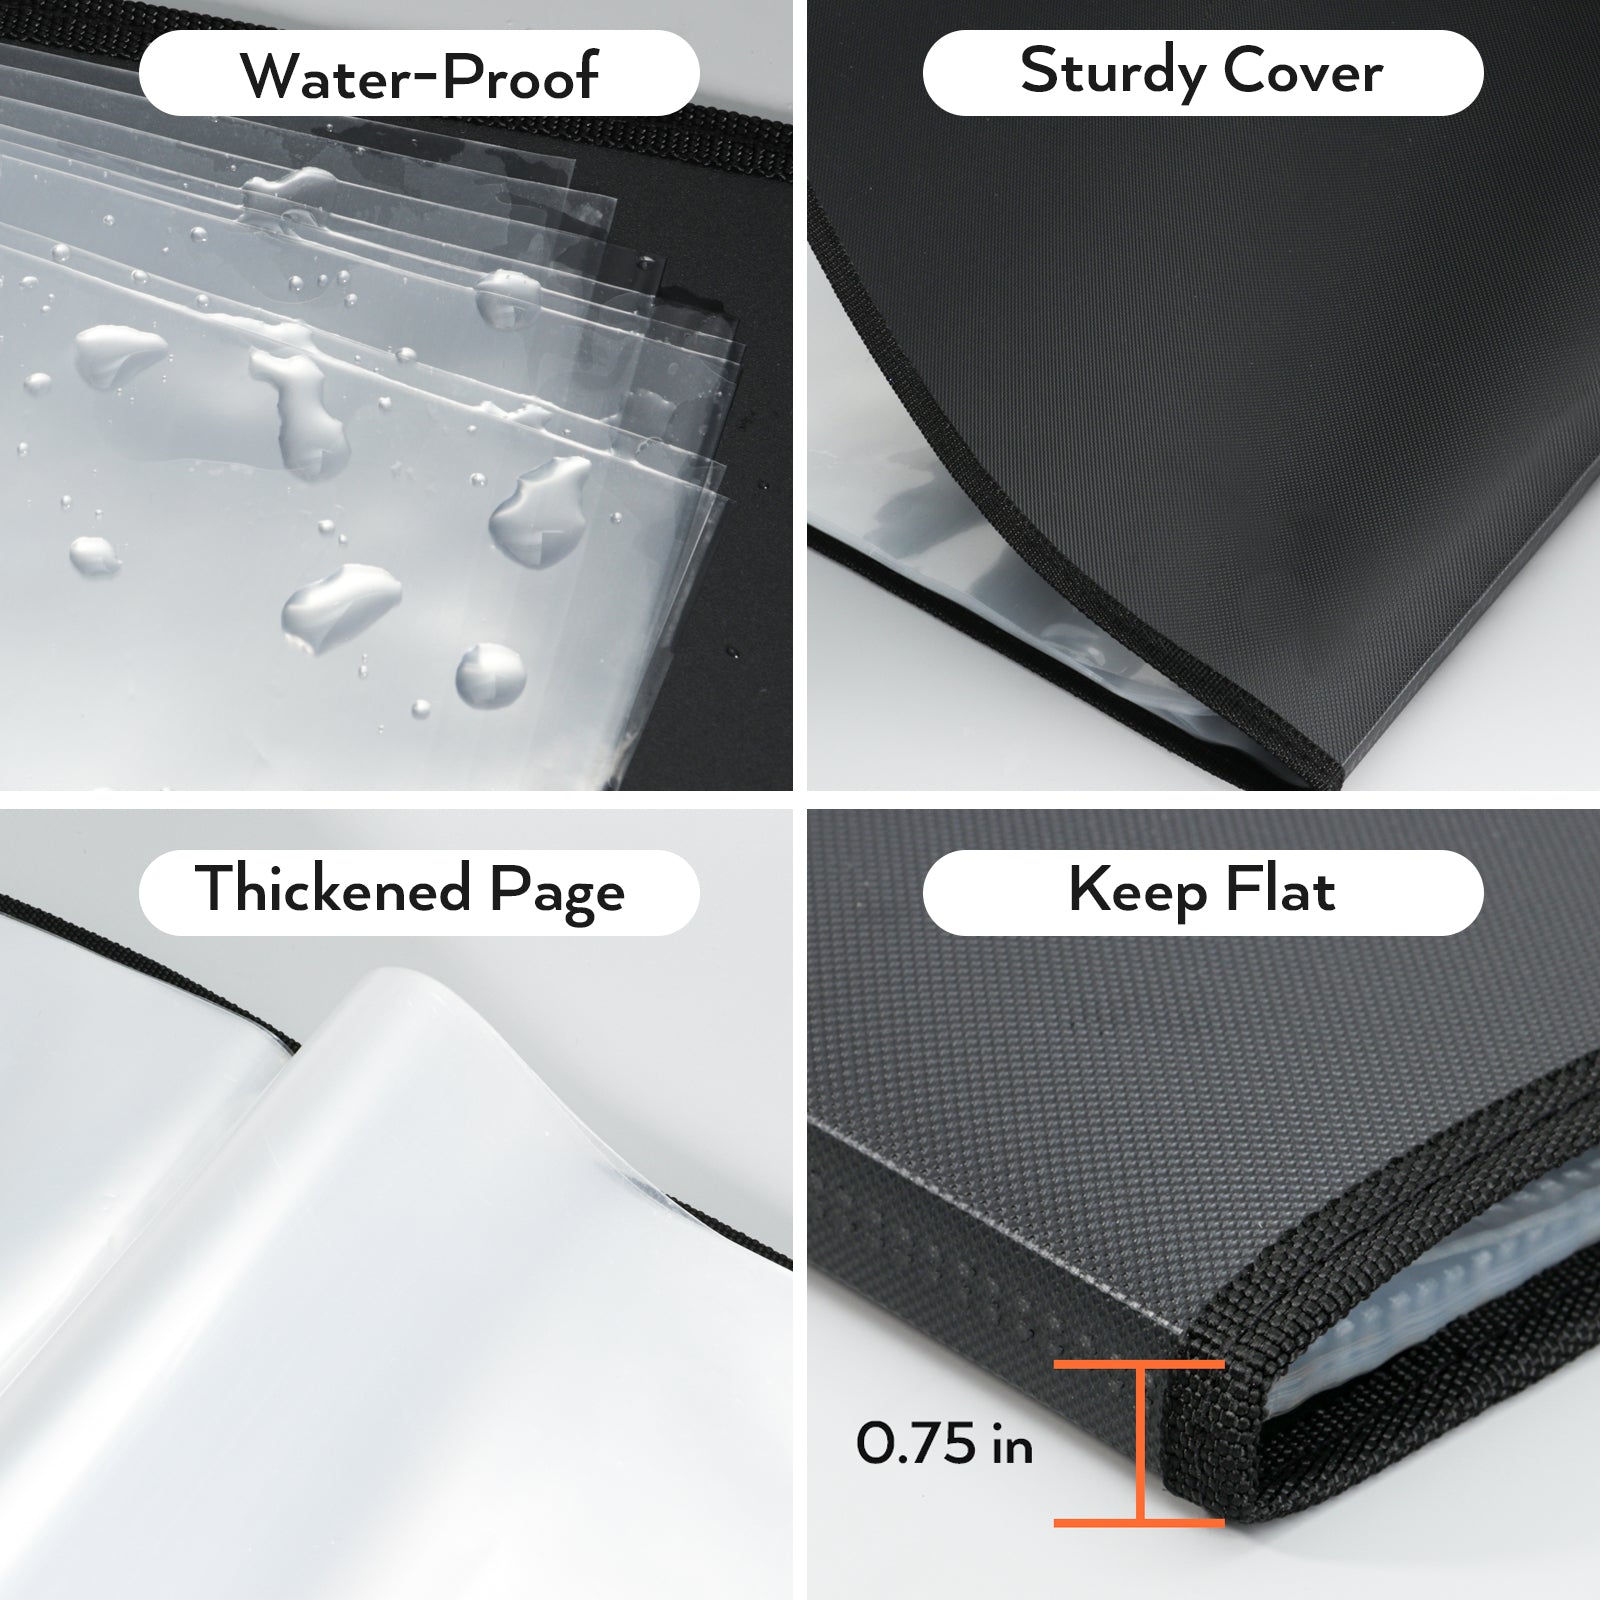 Nicpro Light Weight Art Portfolio Bag, 24 x 36 Inches Waterproof Nylon